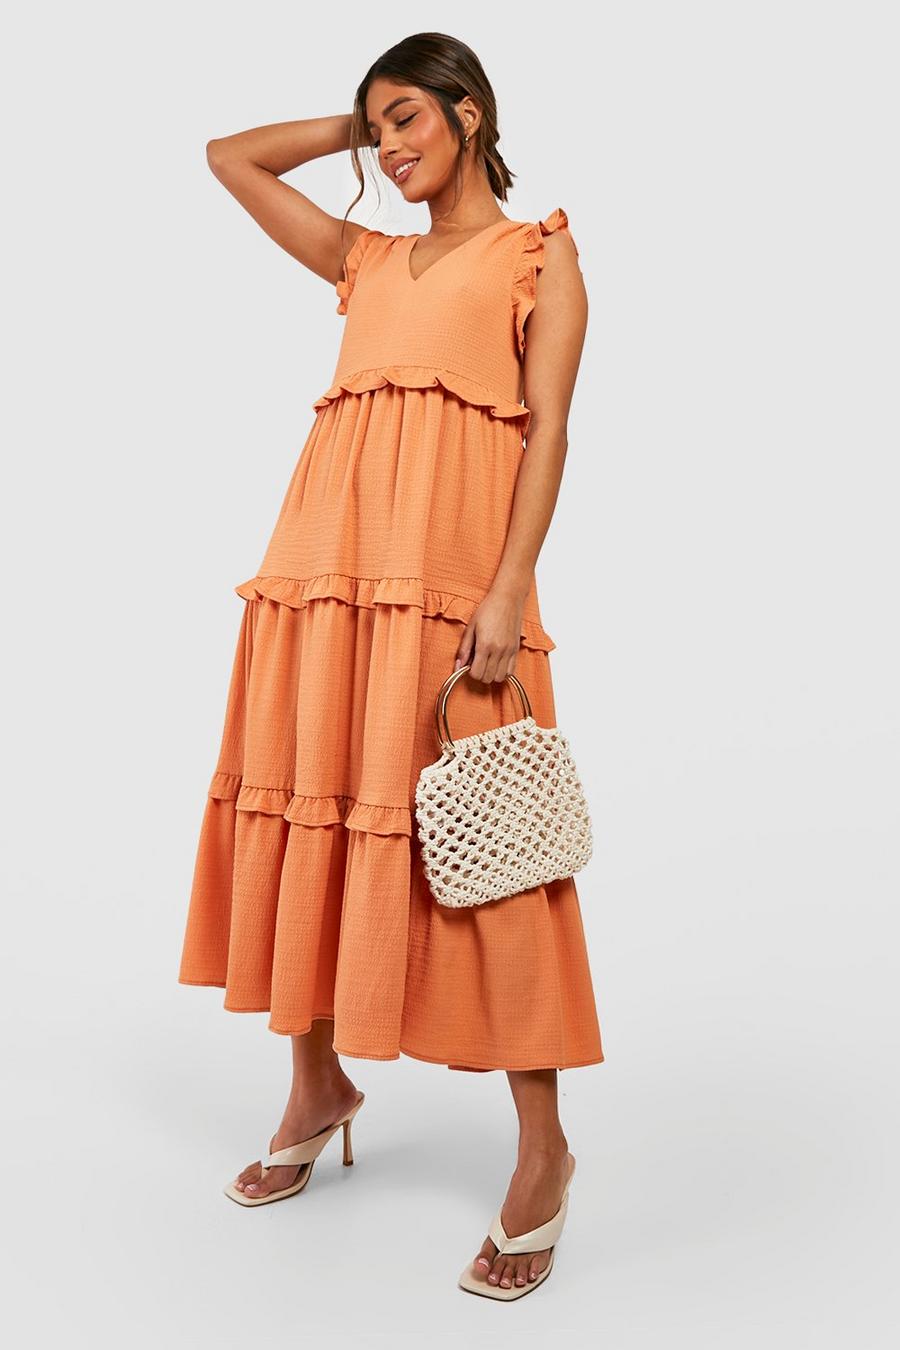 Orange Sleeveless Ruffle Textured Smock Dress image number 1